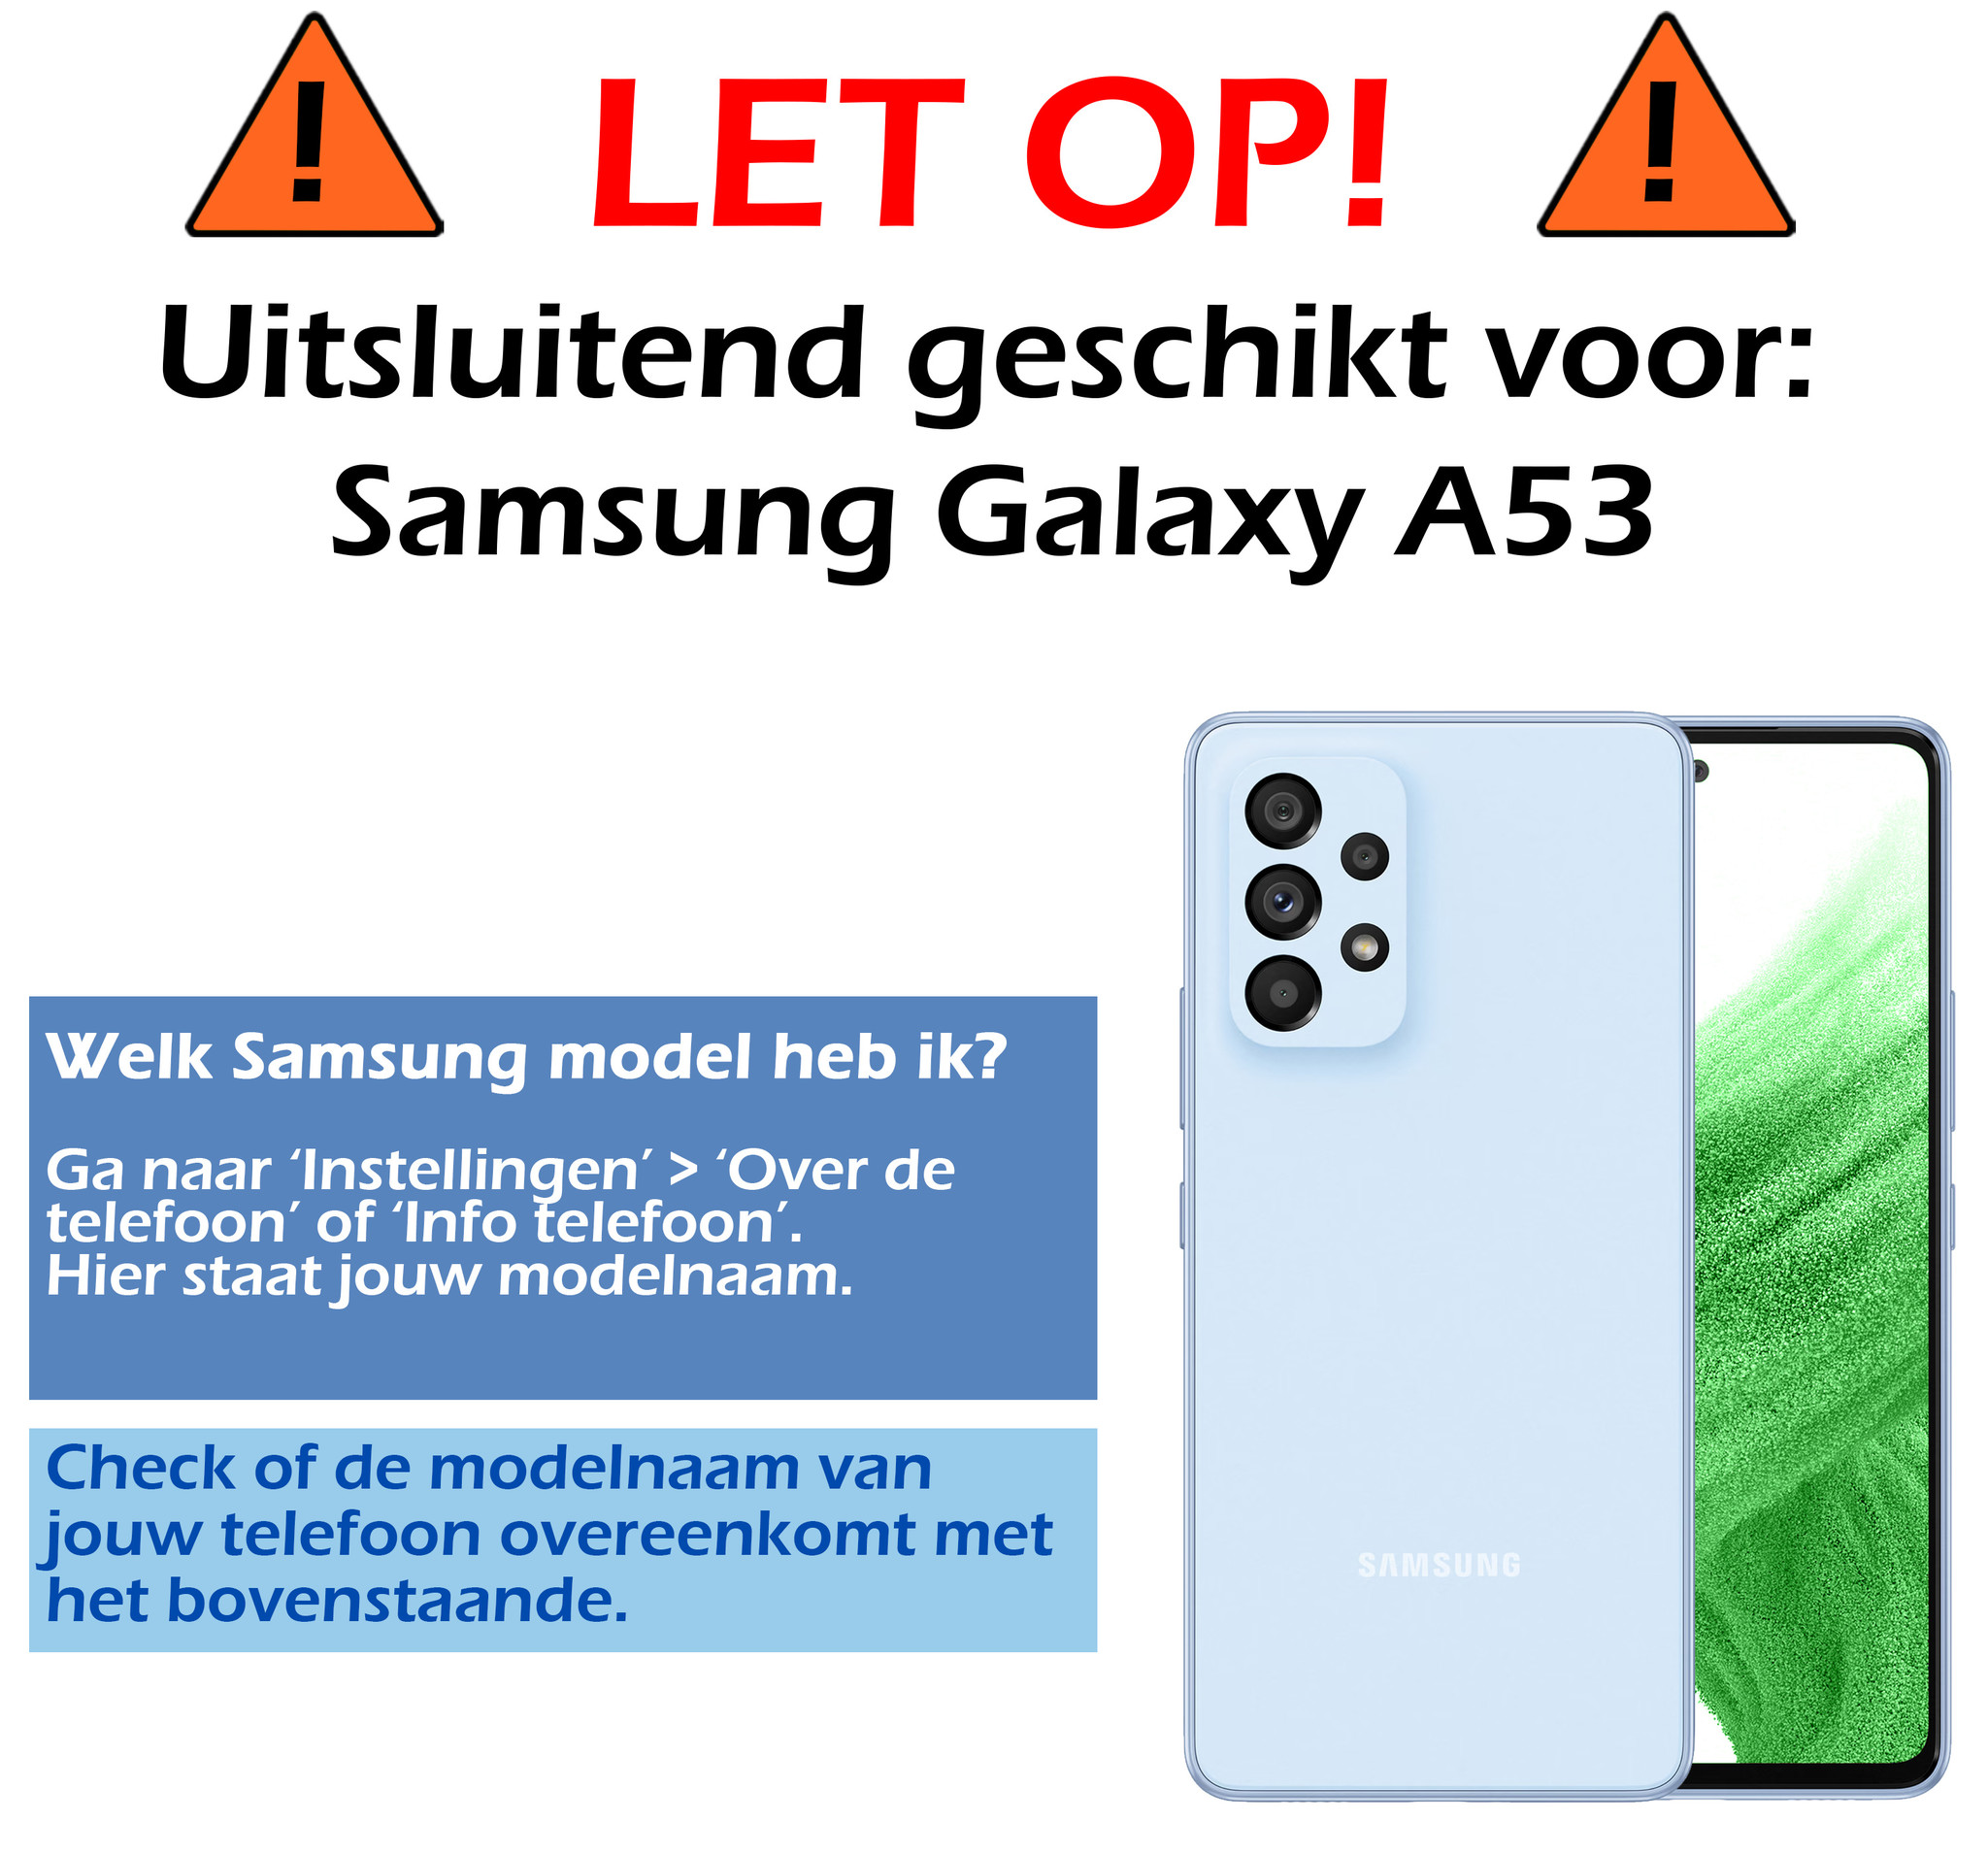 Samsung Galaxy A53 Hoesje Siliconen - Samsung Galaxy Galaxy A53 Hoesje Zwart Case - Samsung Galaxy Galaxy A53 Cover Siliconen Back Cover - Zwart